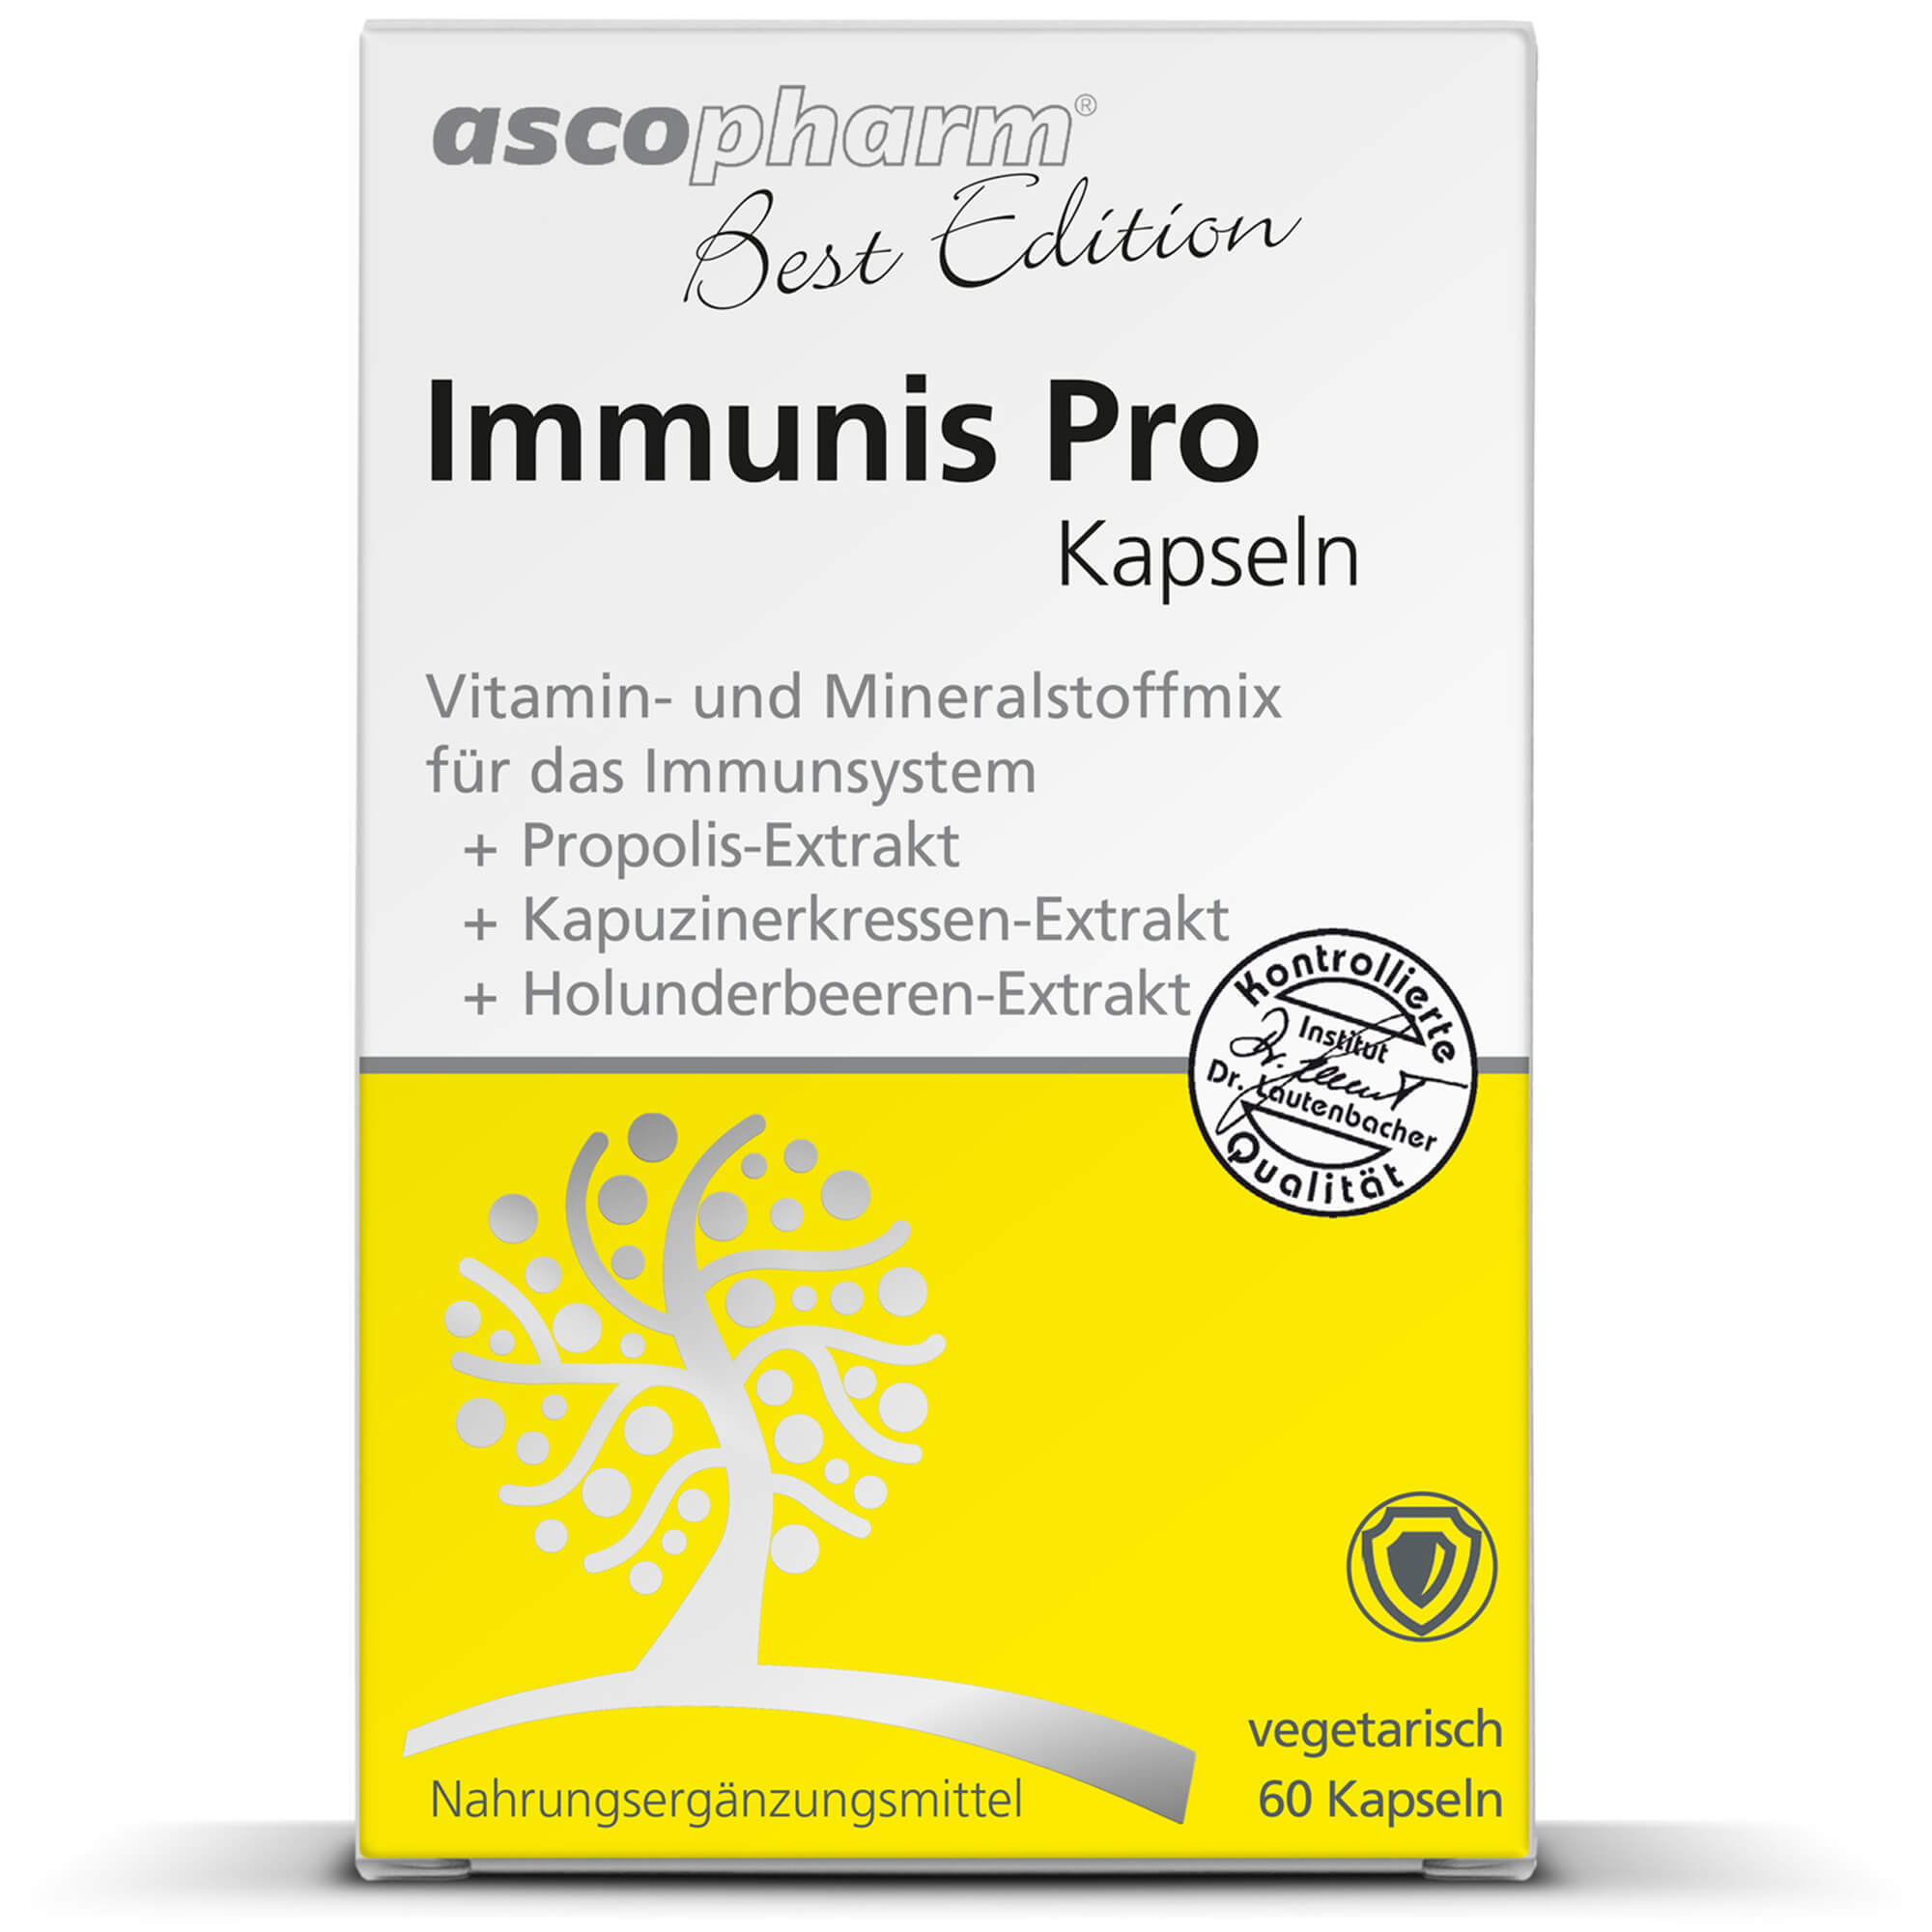 BEST EDITION Immunis Pro Hartkapseln